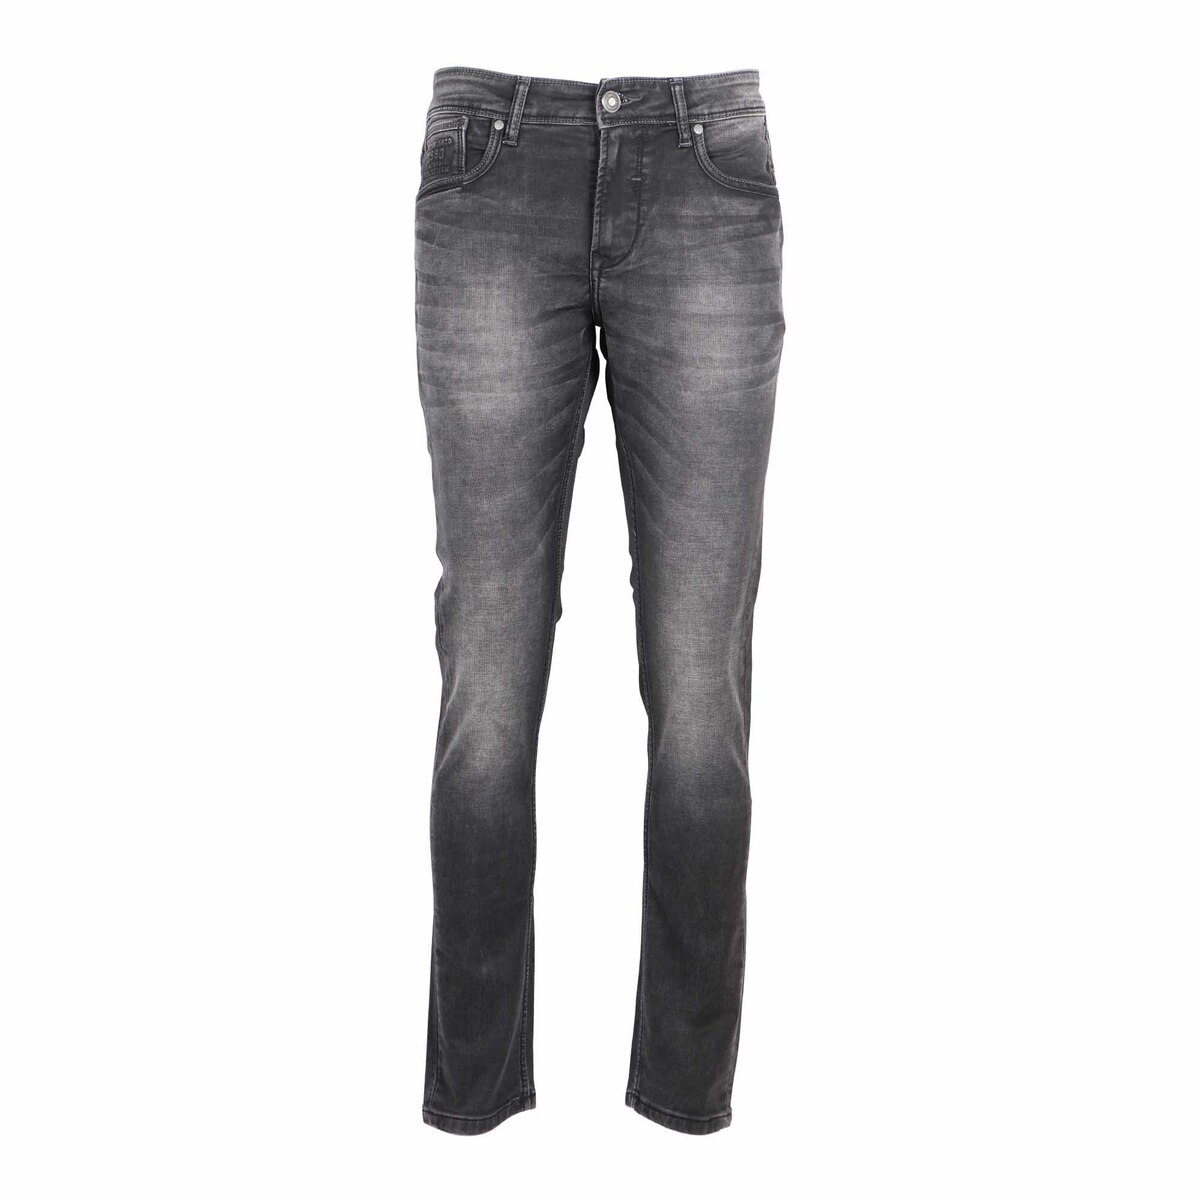 Sunnex Men's Slim Fit Jeans WR-21504 Dark Brown 36